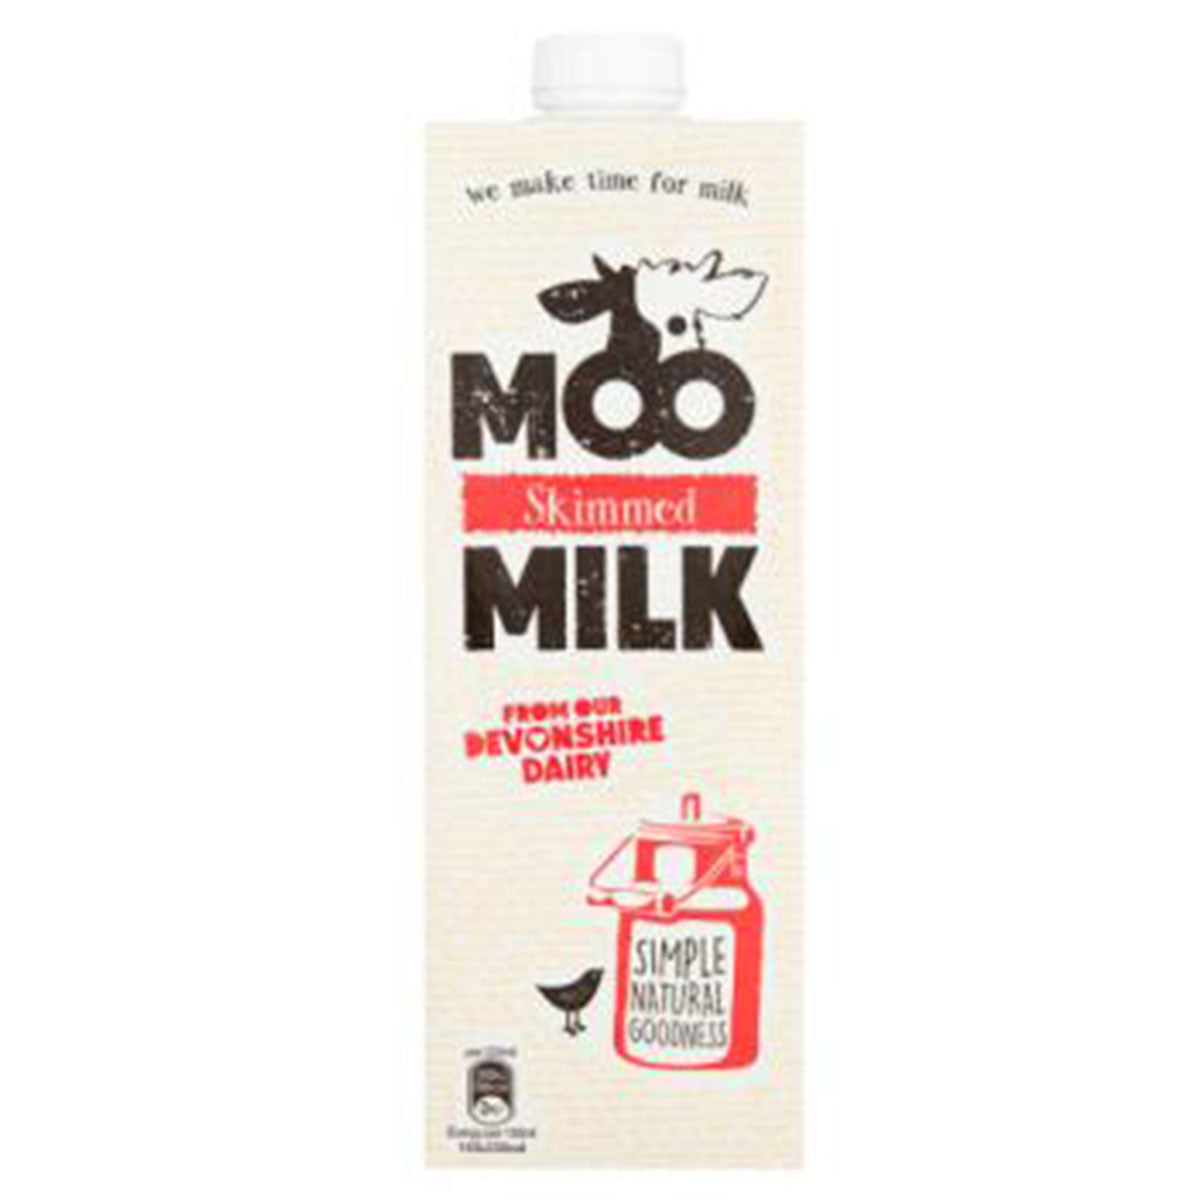 Moo - Skimmed Milk - 1L - Continental Food Store